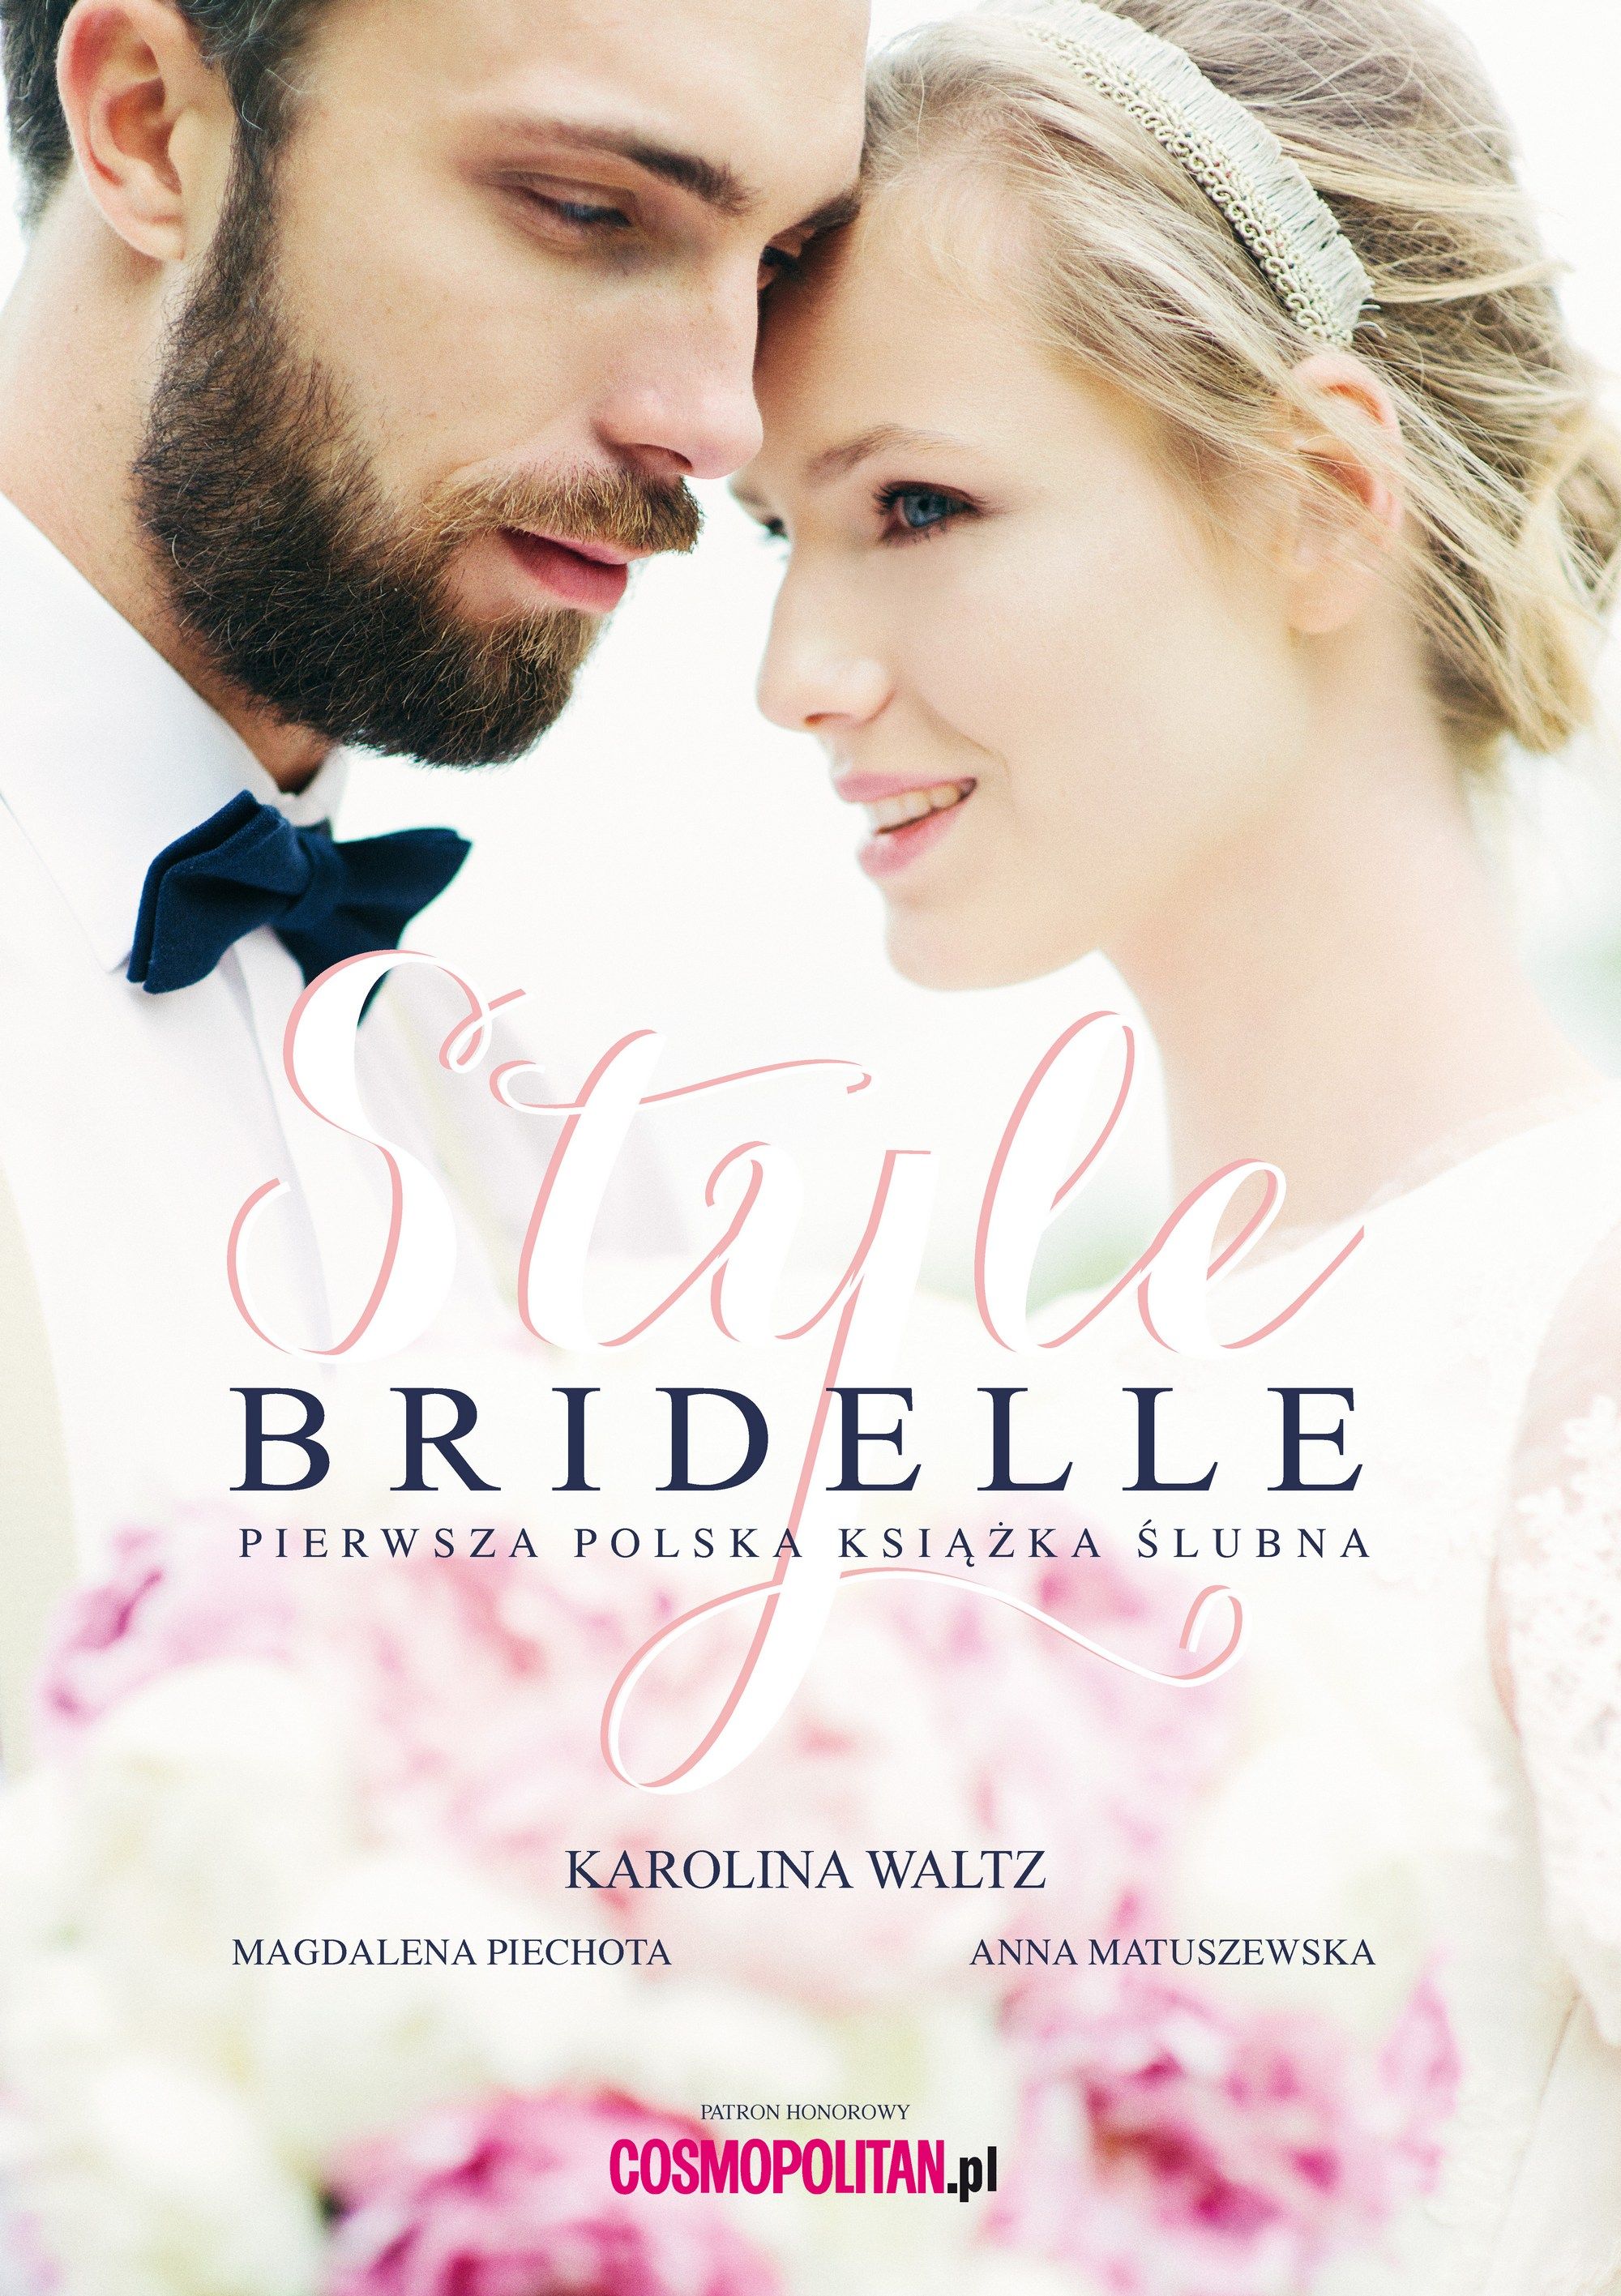 7 listopada rusza przedsprzedaż książki Bridelle Style